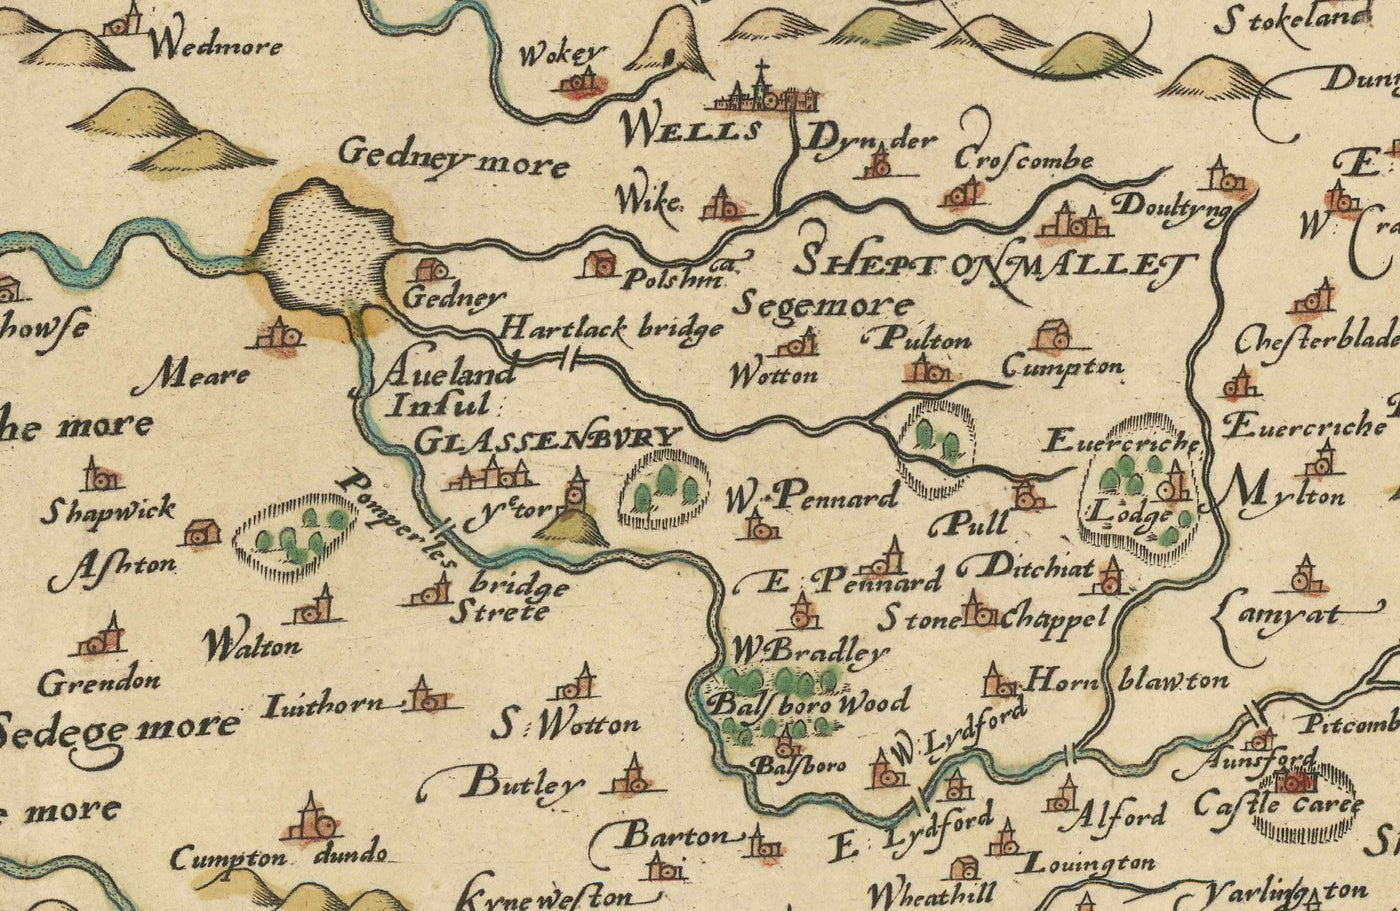 Raro mapa antiguo de Somerset, 1575 por Saxton - Bath, Bristol, West Country, Mendips, Weston-super-Mare